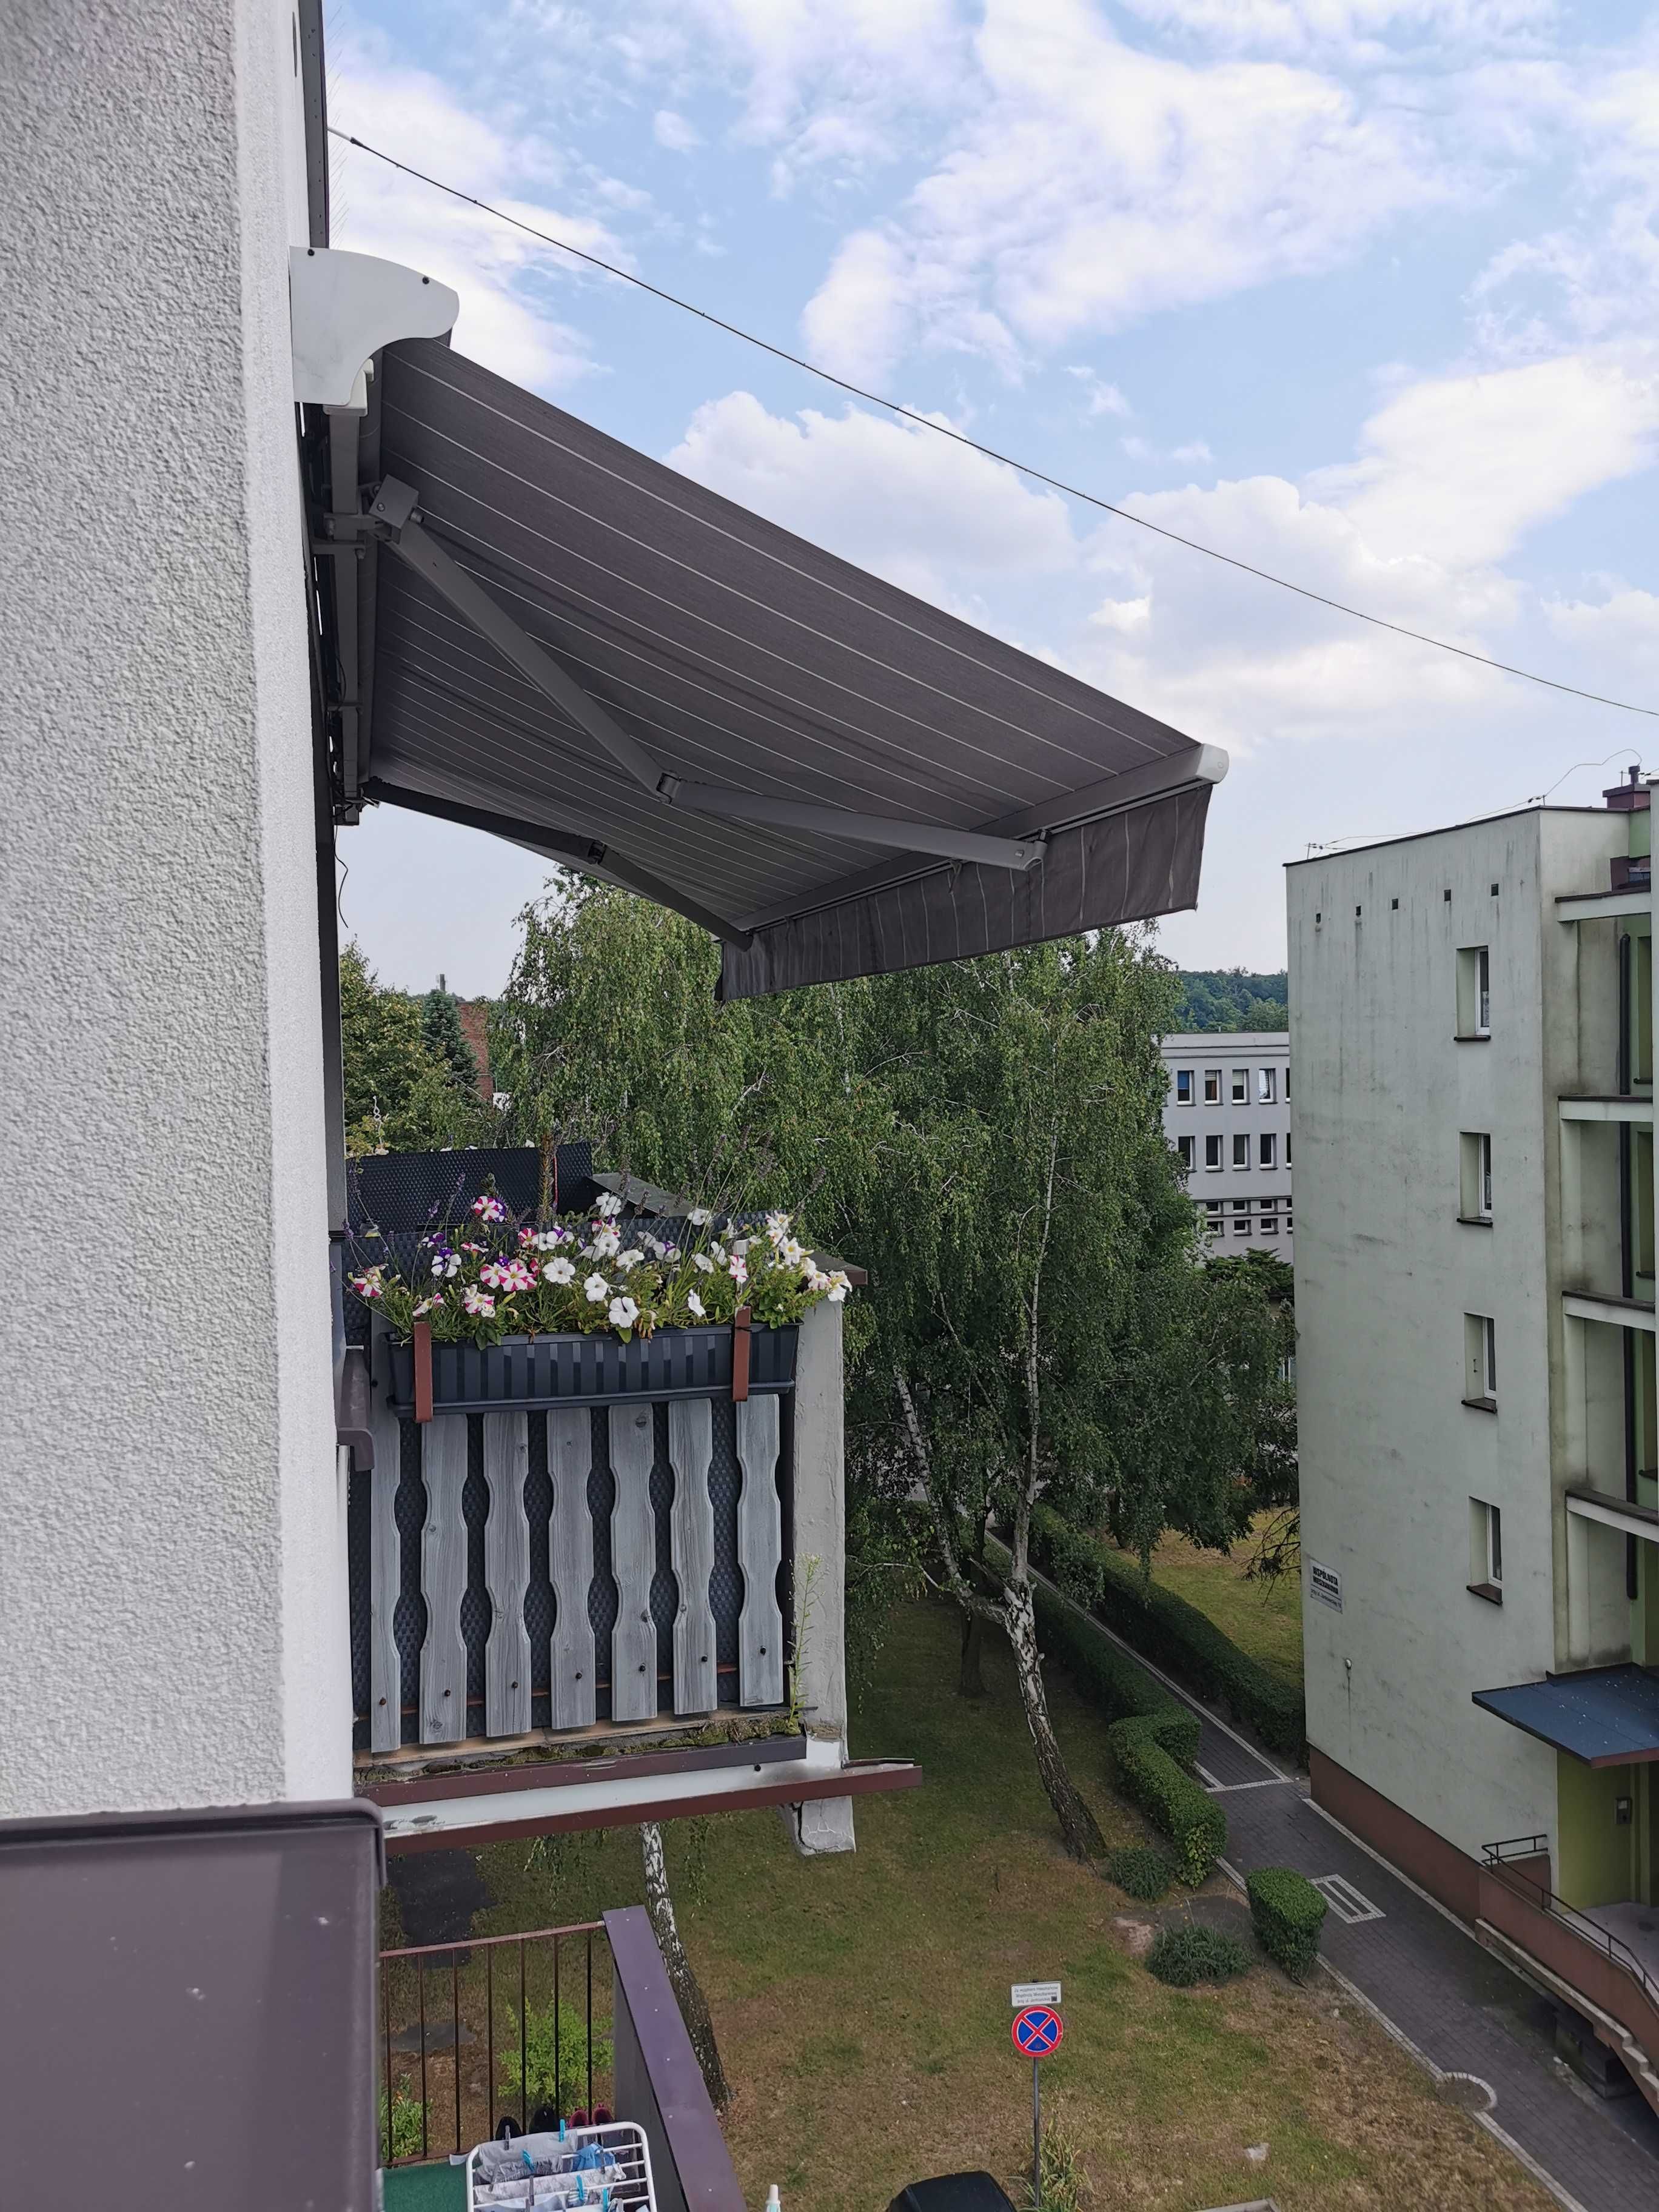 Markiza Selt  tarasowa balkonowa